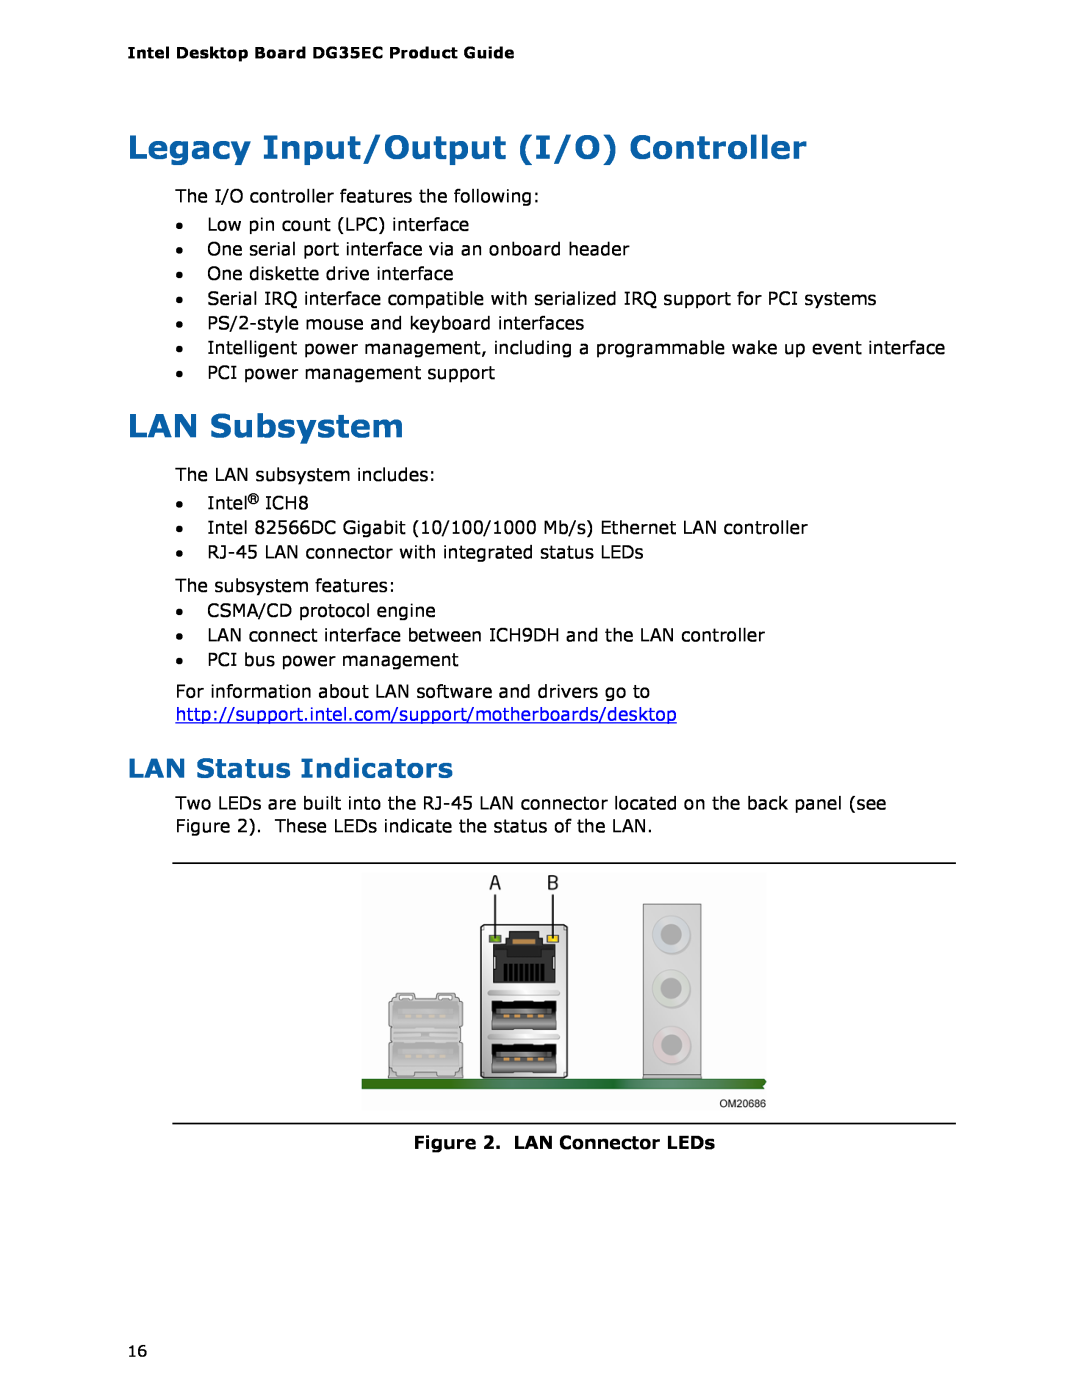 Intel Intel Desktop Board Legacy Input/Output I/O Controller, LAN Subsystem, LAN Status Indicators, LAN Connector LEDs 